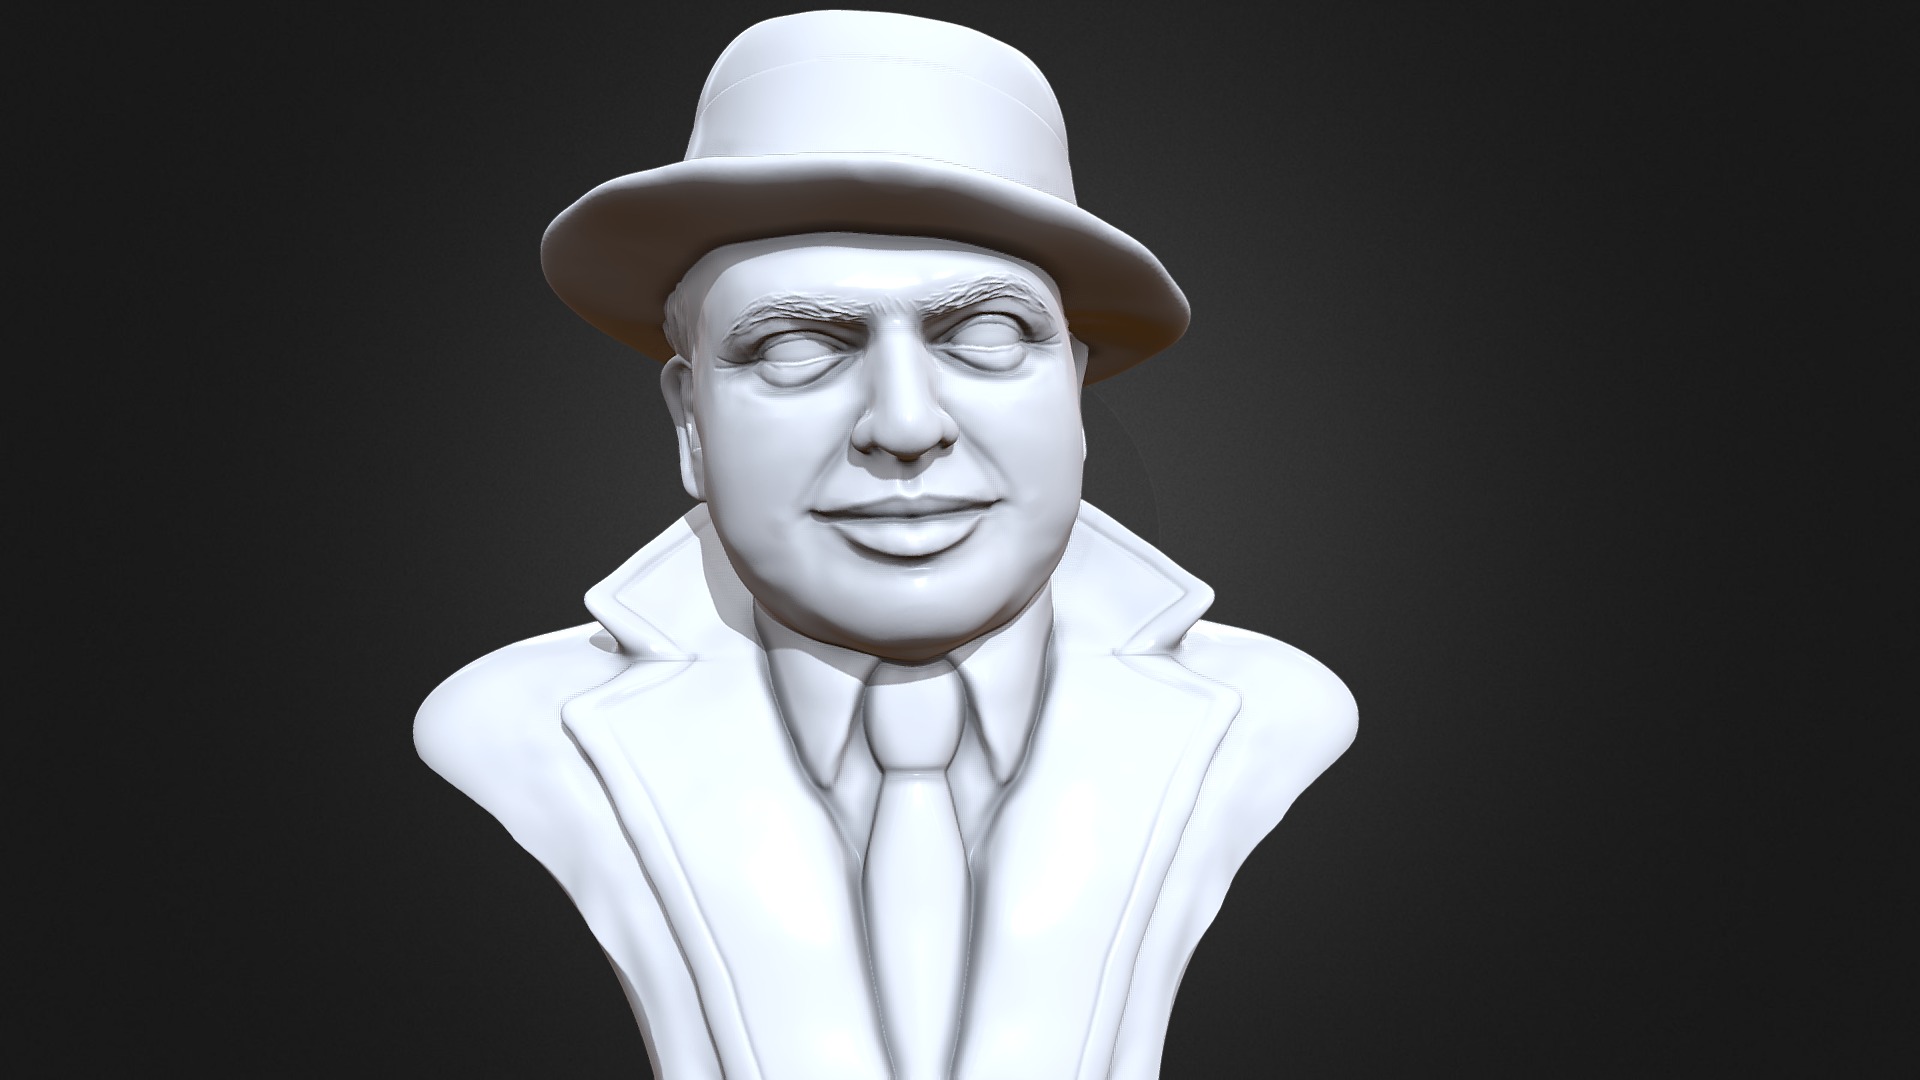 3D model Al Capone 3D printable portrait sculpture - This is a 3D model of the Al Capone 3D printable portrait sculpture. The 3D model is about a statue of a person.